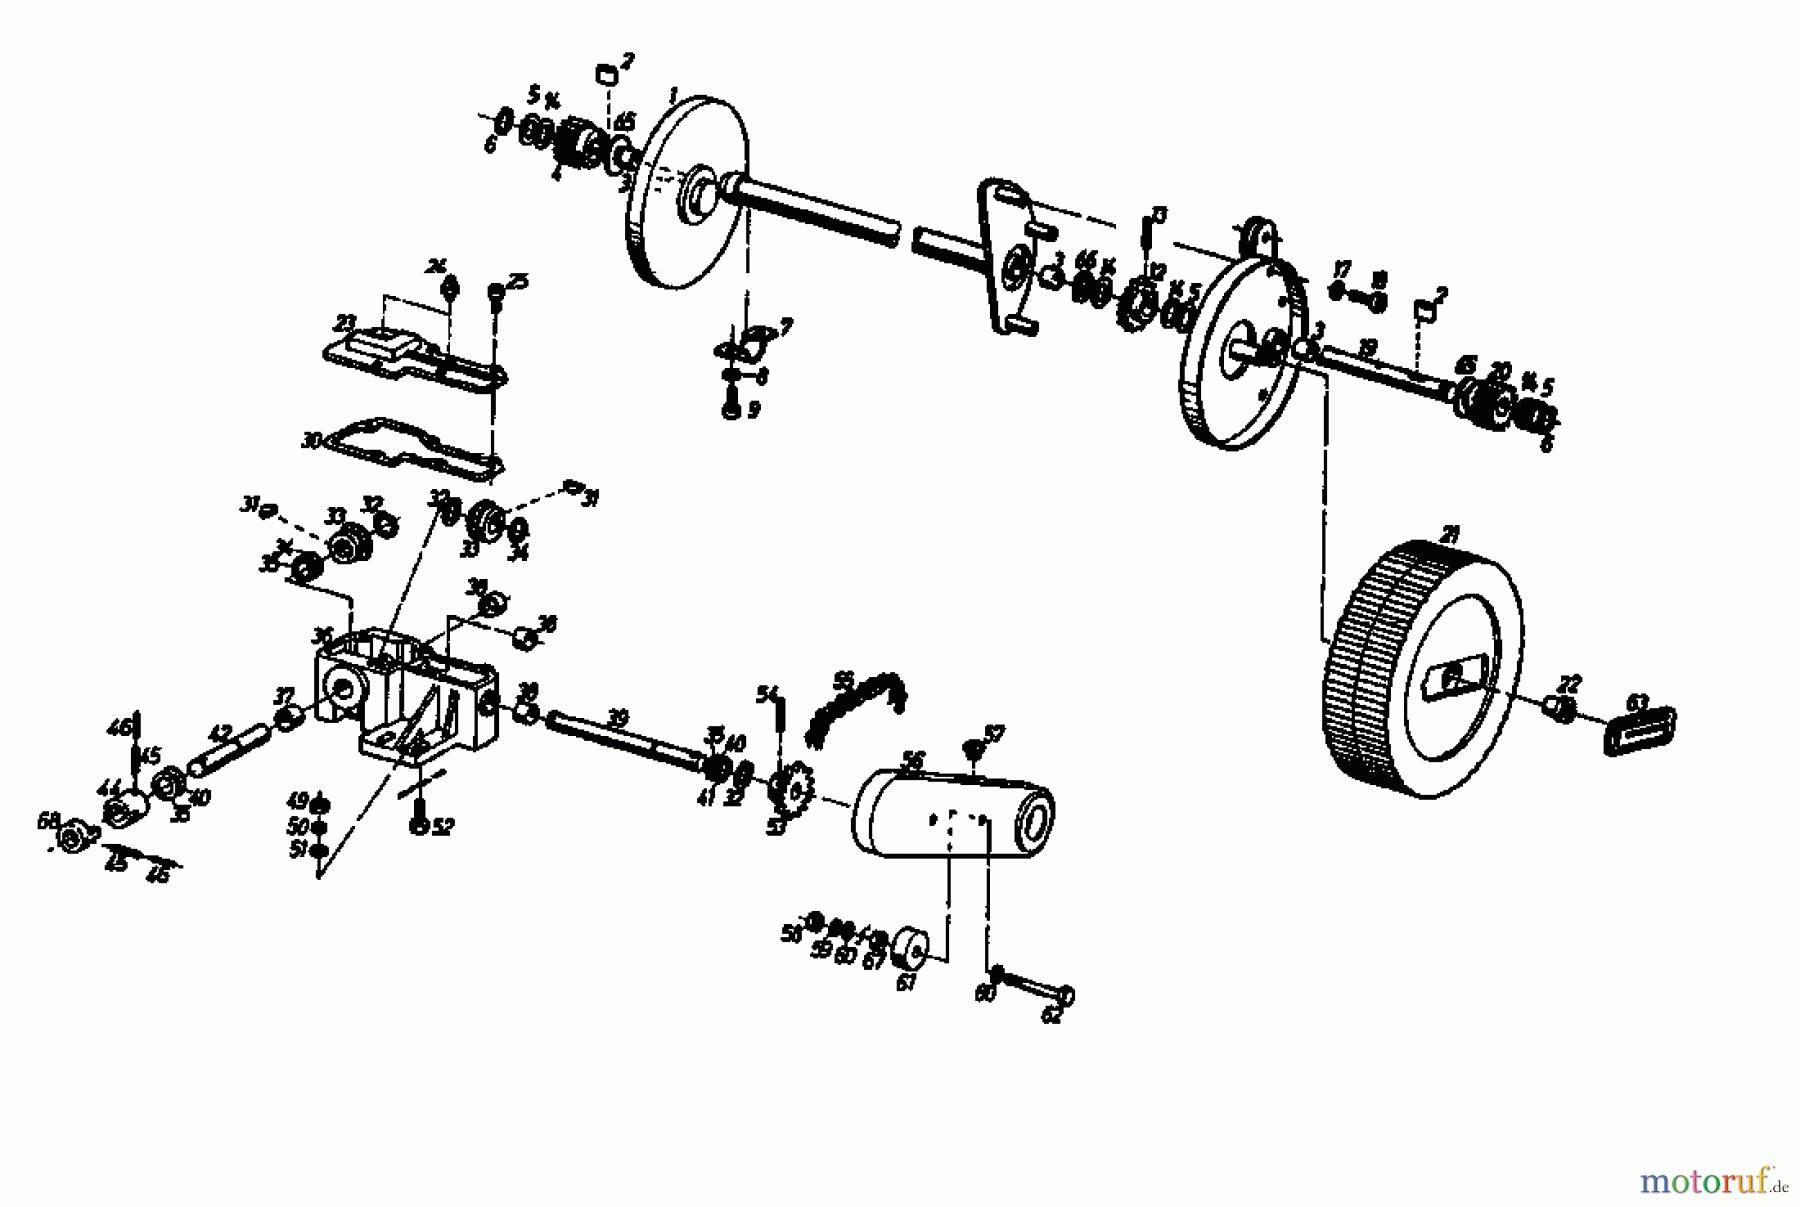  Gutbrod Petrol mower self propelled HB 45 REL 02885.02  (1987) Gearbox, Wheels